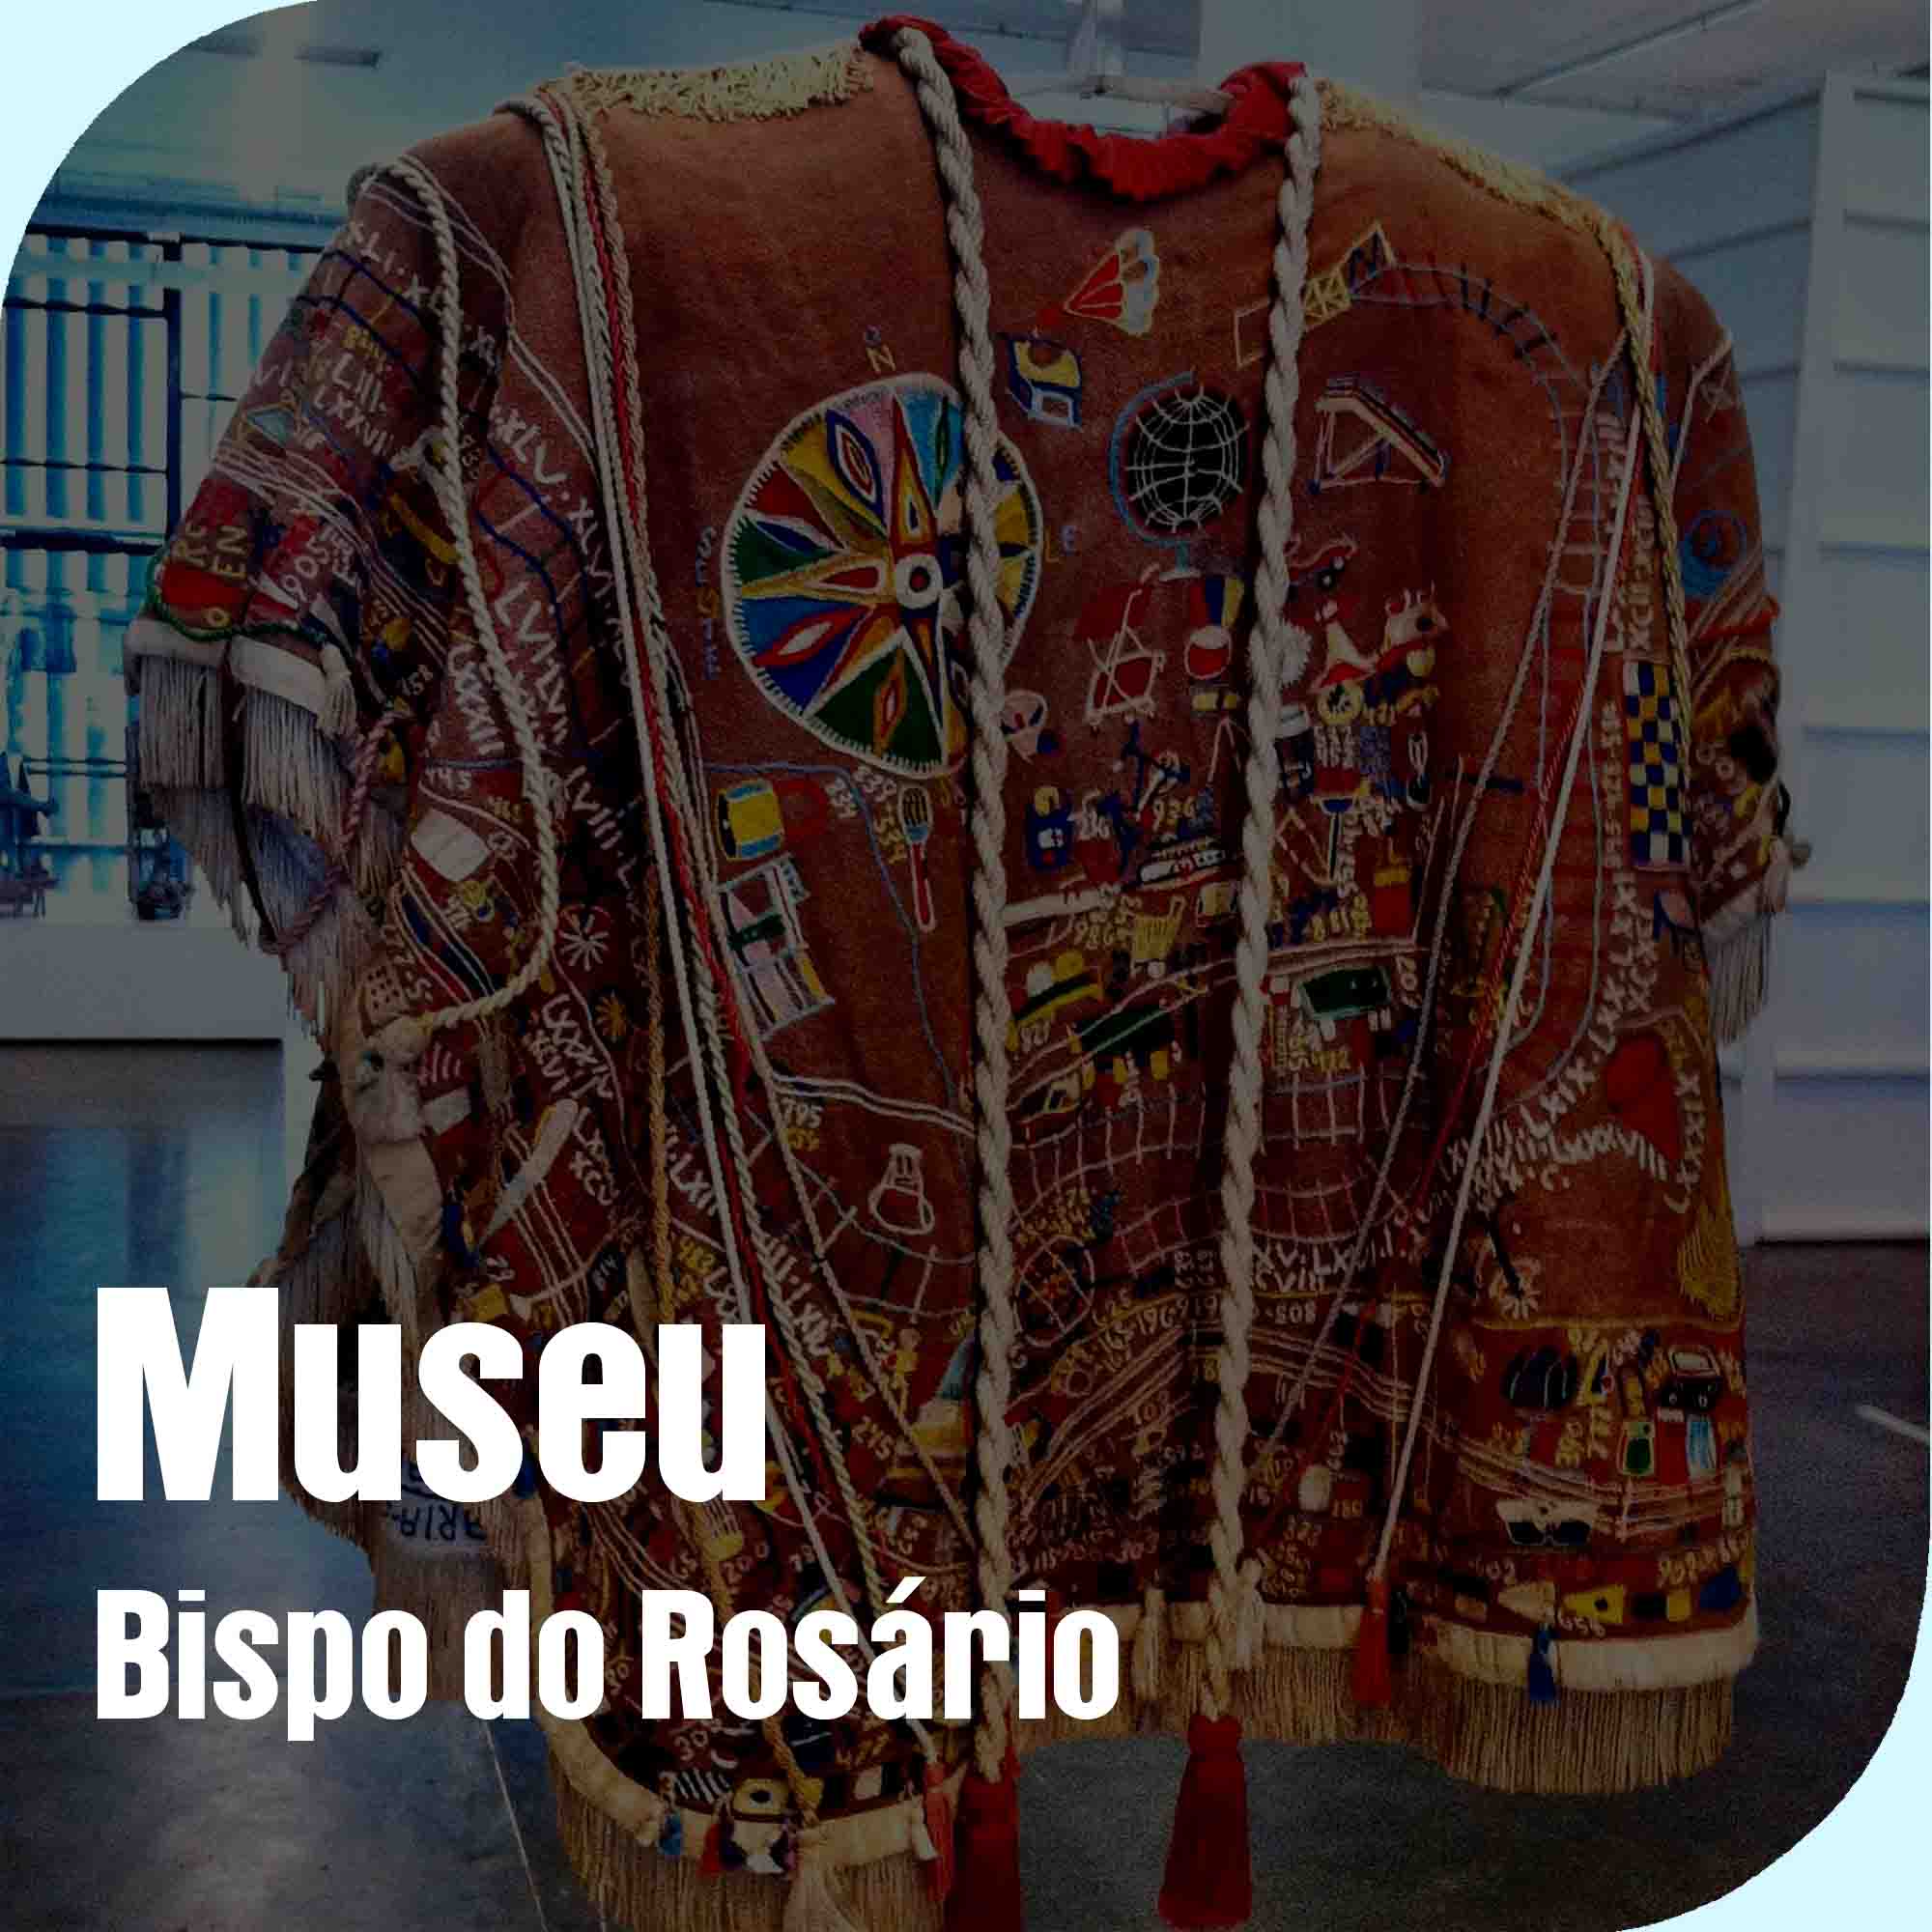 Museu Bispo do Rosário Arte Contemporânea (mBrac)